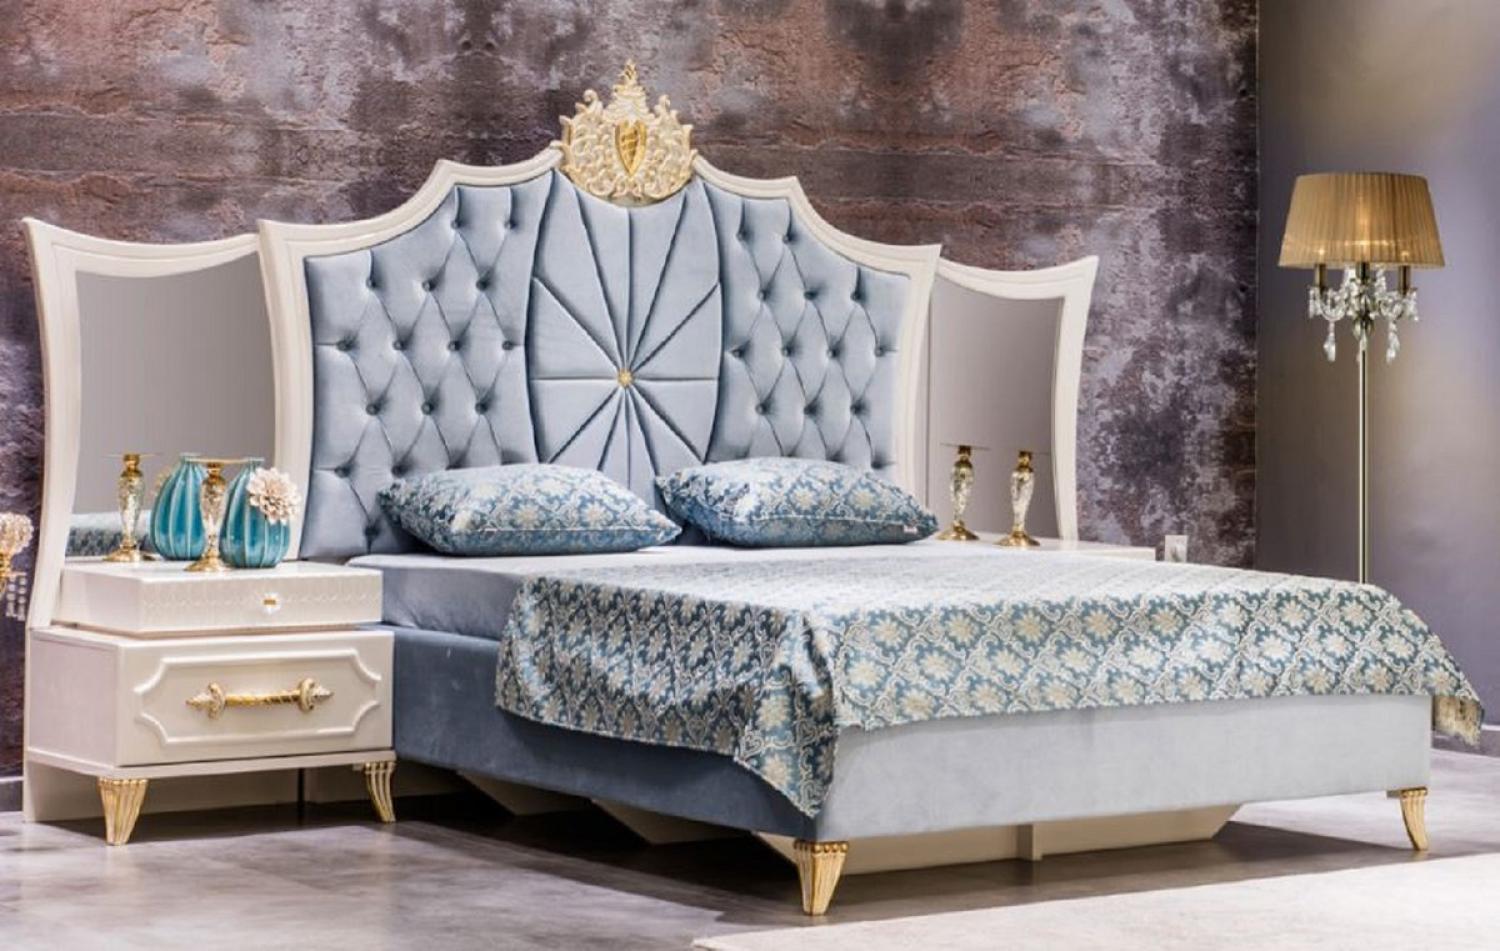 Casa Padrino Luxus Barock Schlafzimmer Set Blau / Weiß / Gold - 1 Doppelbett mit Kopfteil & 2 Nachttische mit Spiegel - Barock Schlafzimmer Möbel - Edel & Prunkvoll Bild 1